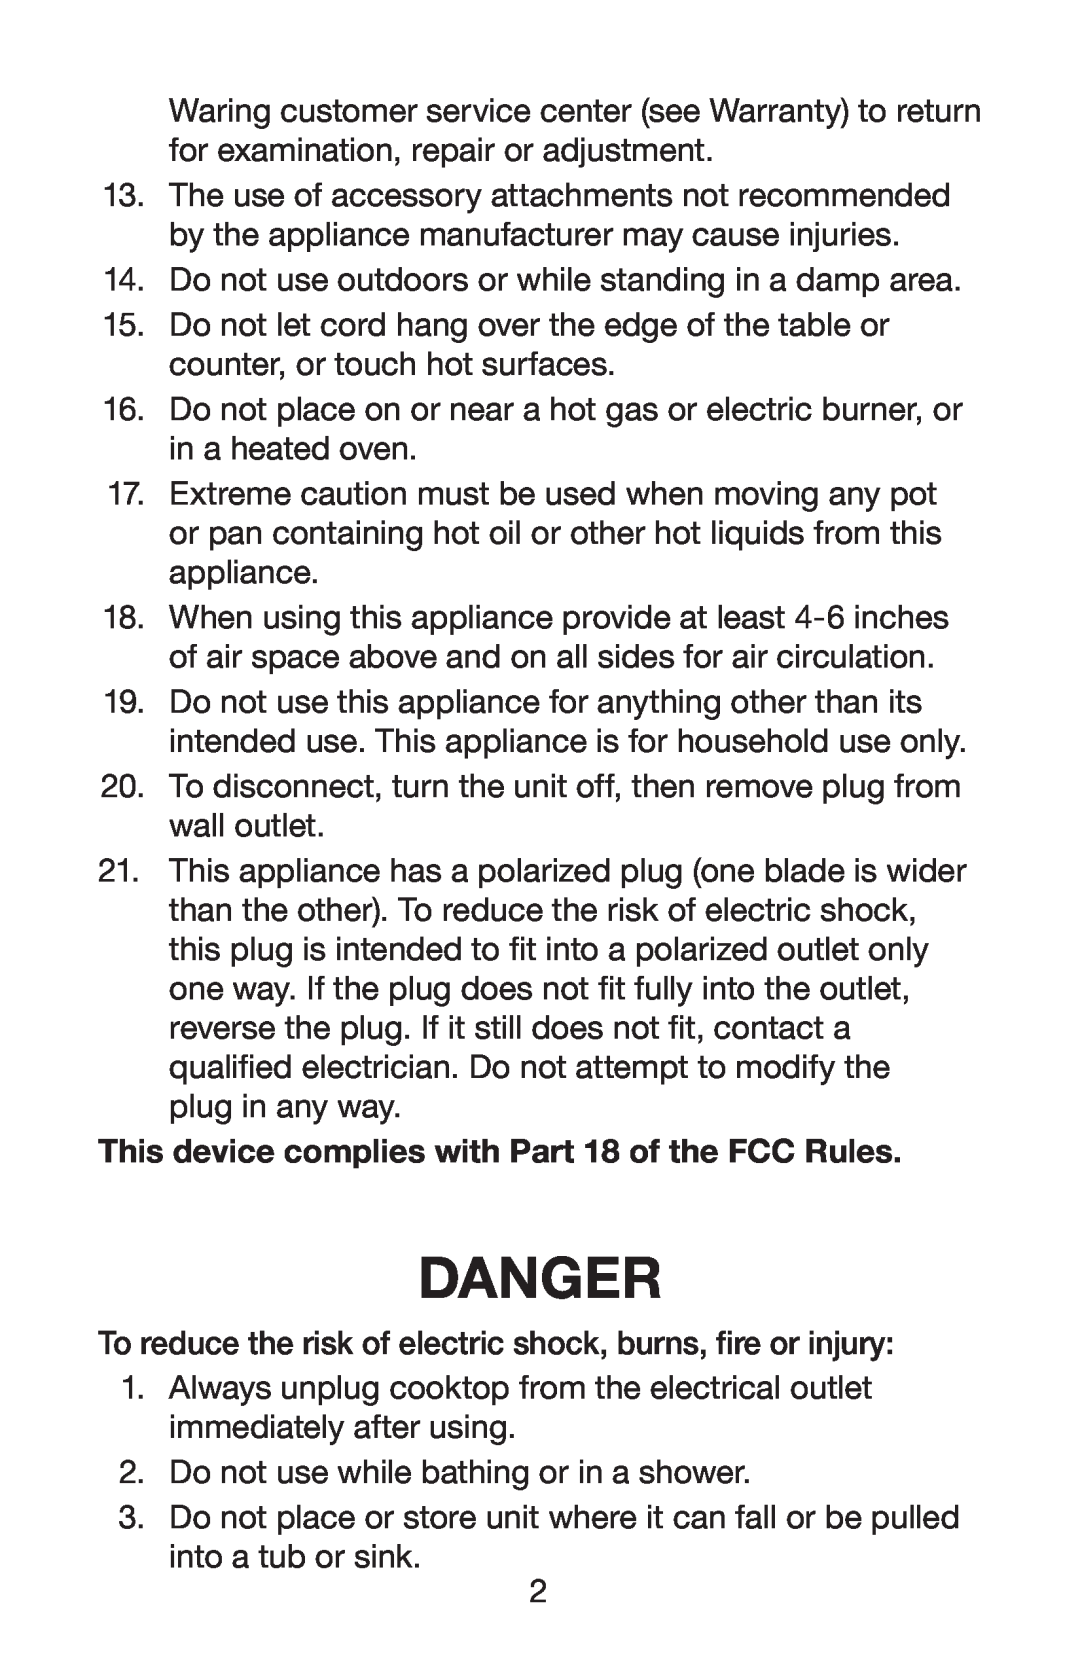 Waring ICT100 manual Danger 